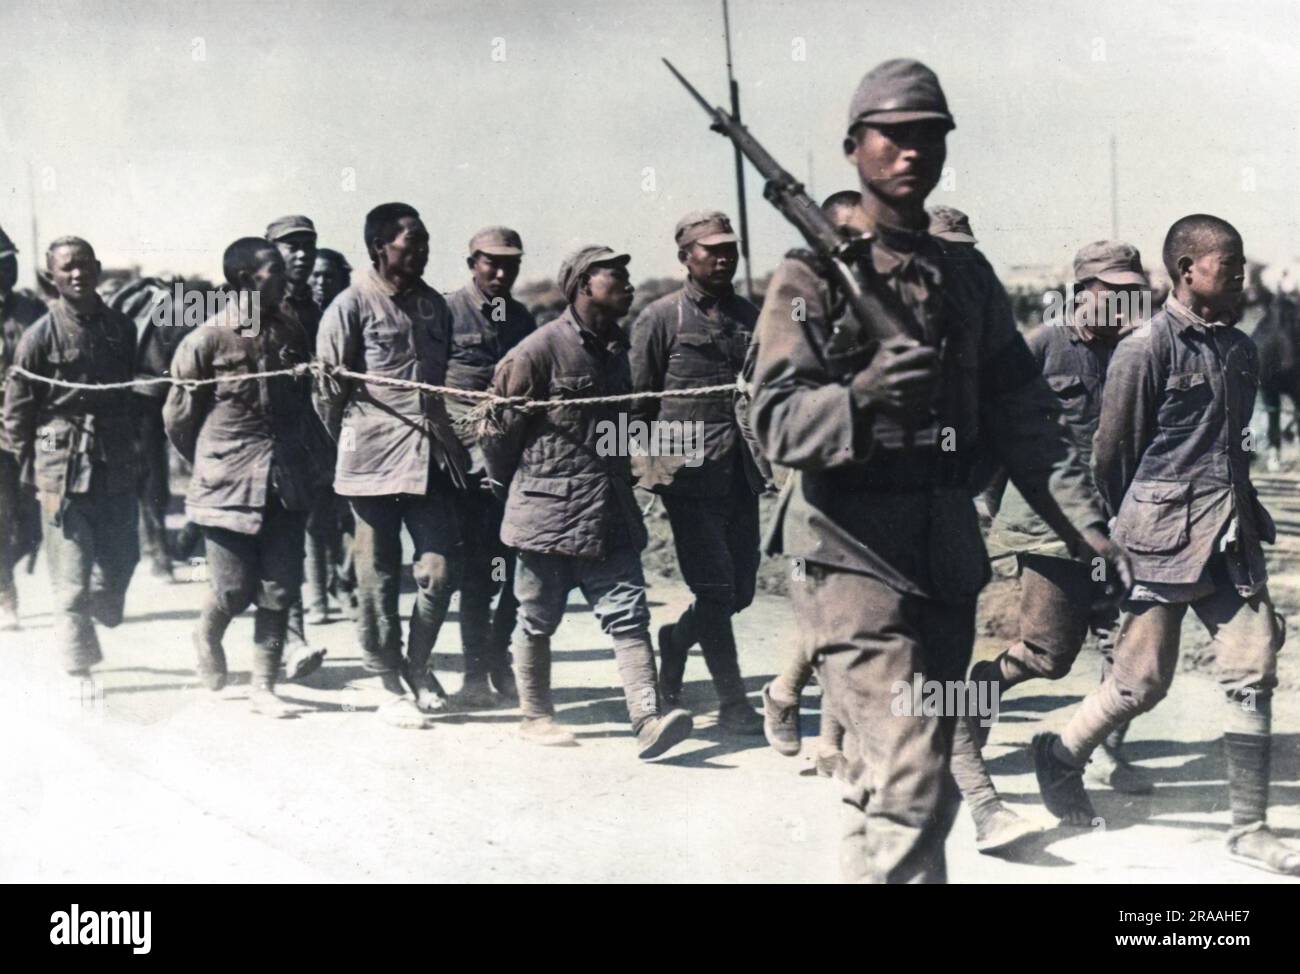 Chinesische Gefangene, die mit Seilen verbunden sind, werden während der Schlacht von Shanghai von ihren japanischen Entführern weggeführt. Datum: November 37 Stockfoto